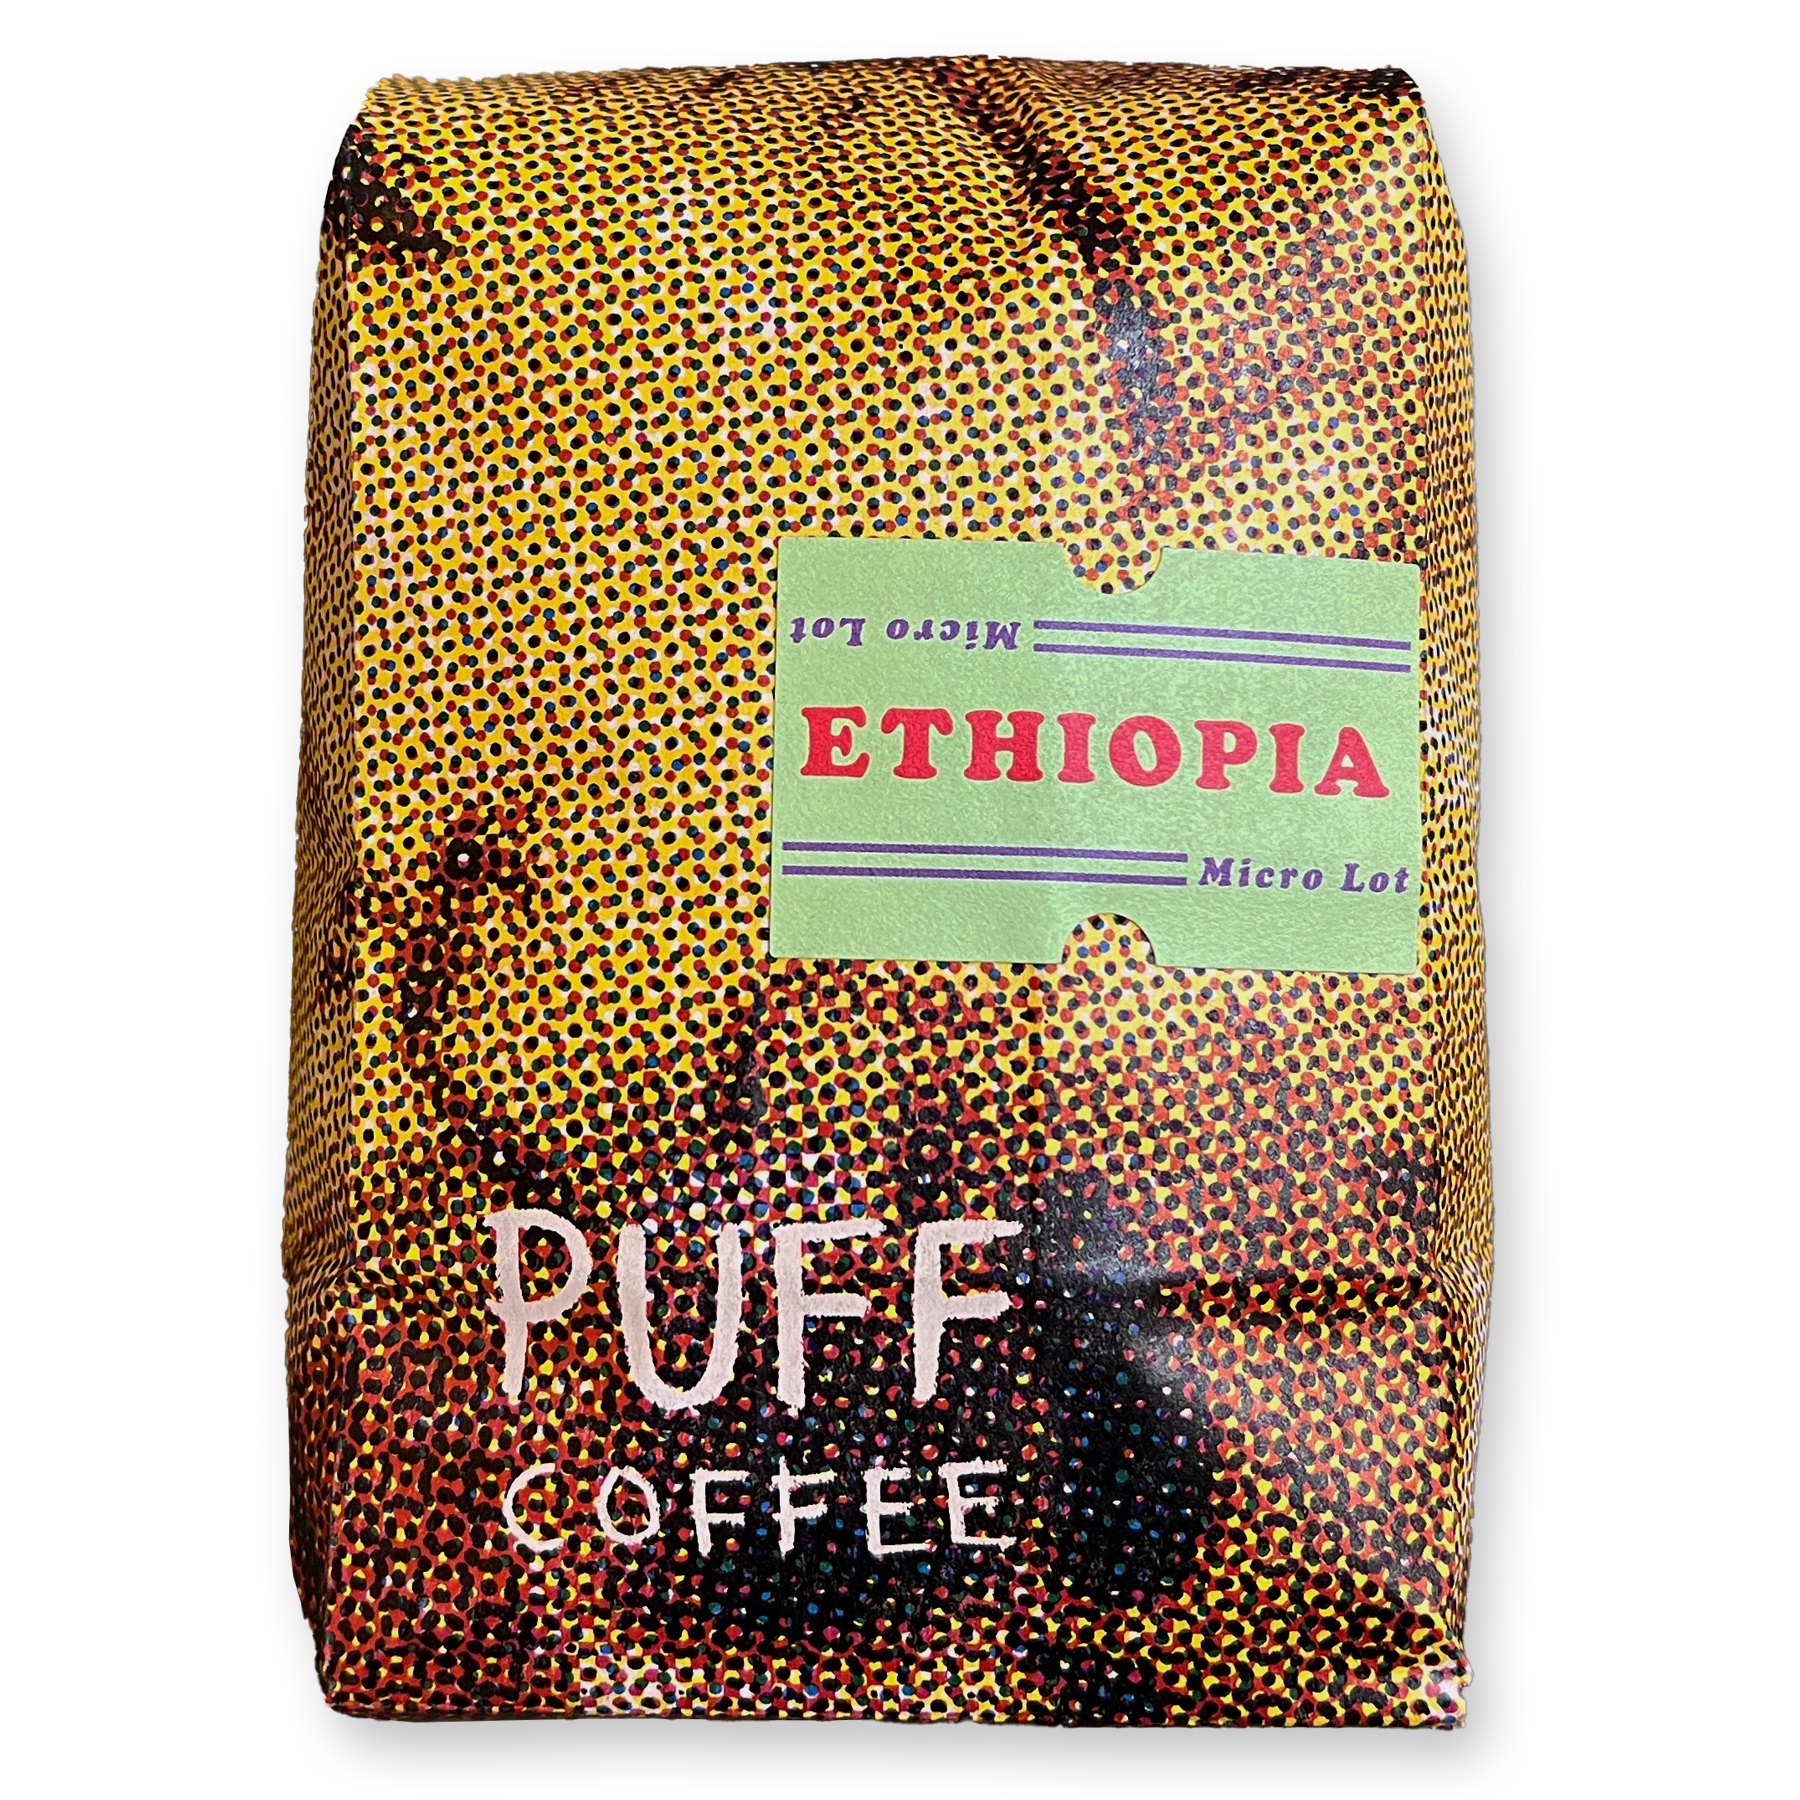 Ethiopia Micro Lot coffee from puff coffee roasters in portland oregon